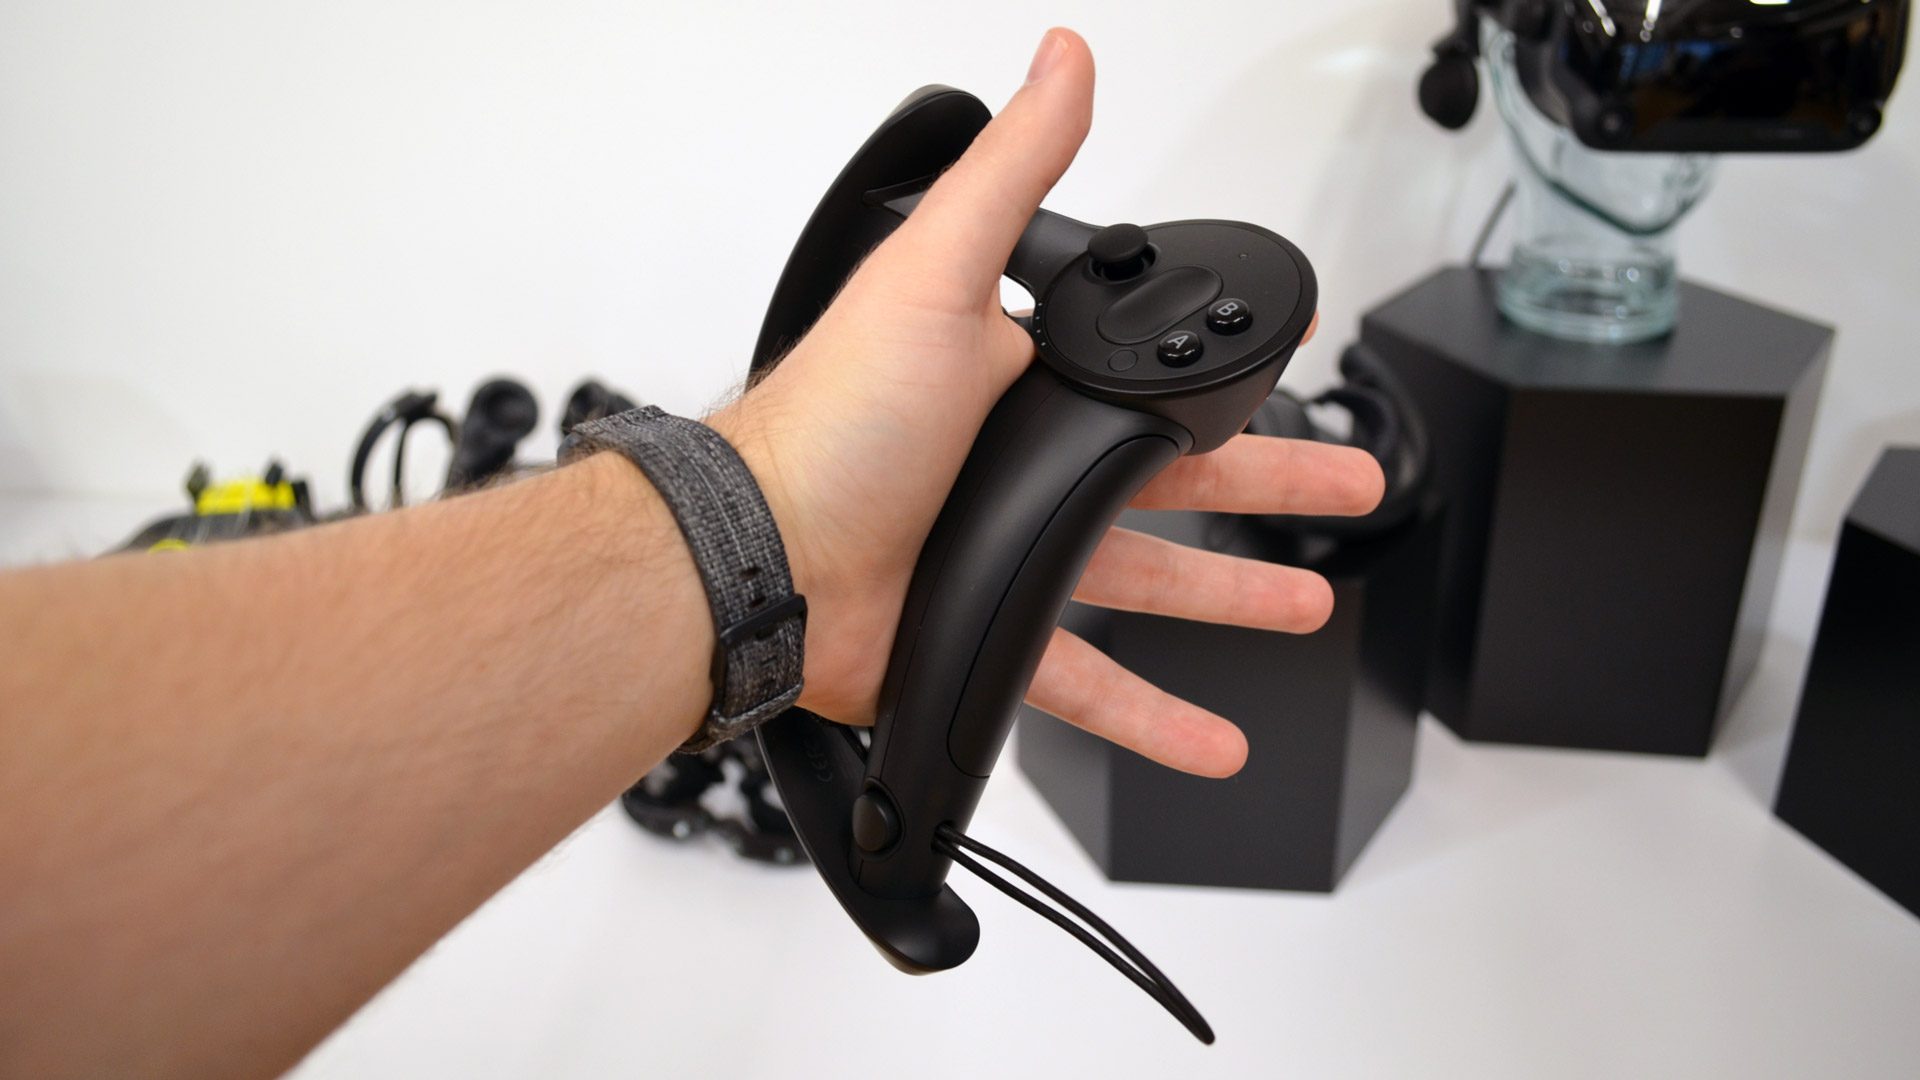 Valve Index VR Headset Sets an Impressive New Bar for VR Fidelity